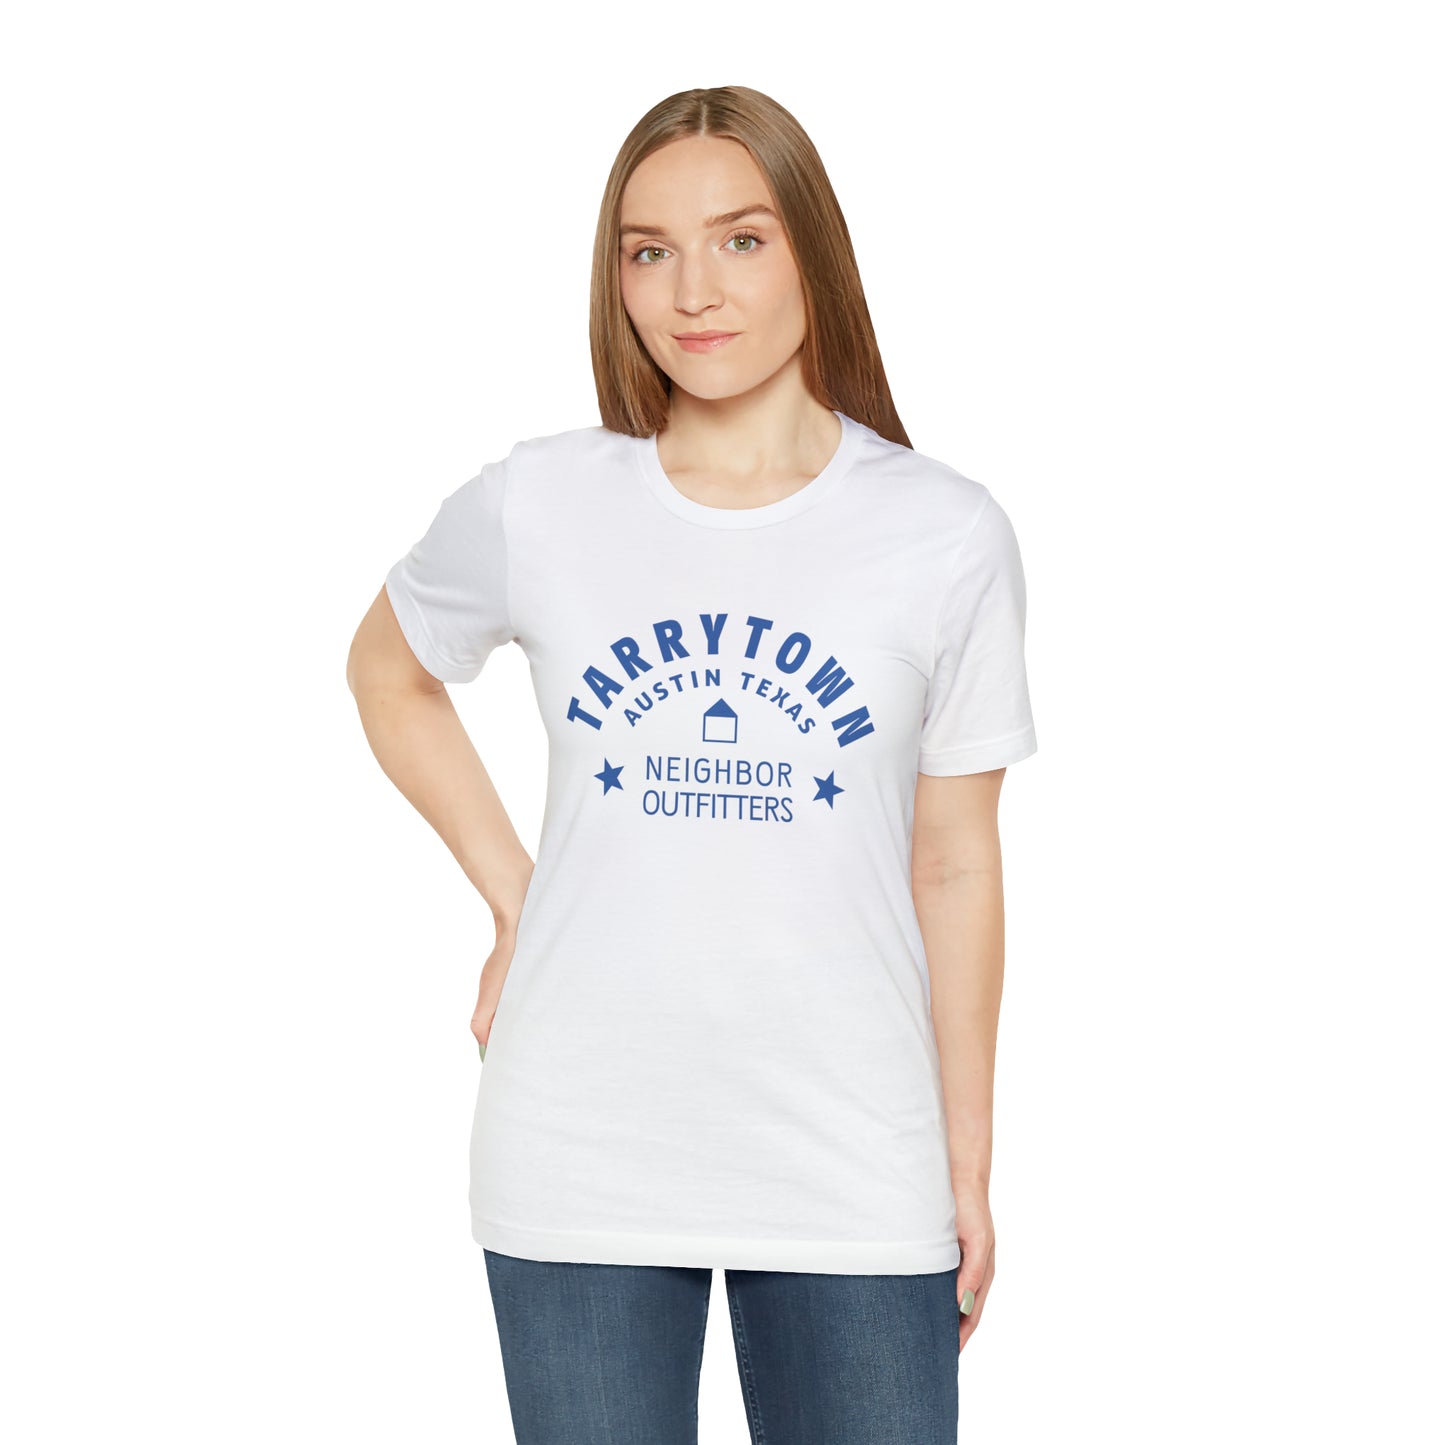 Tarrytown T-Shirt - "Neighborhood Stars"